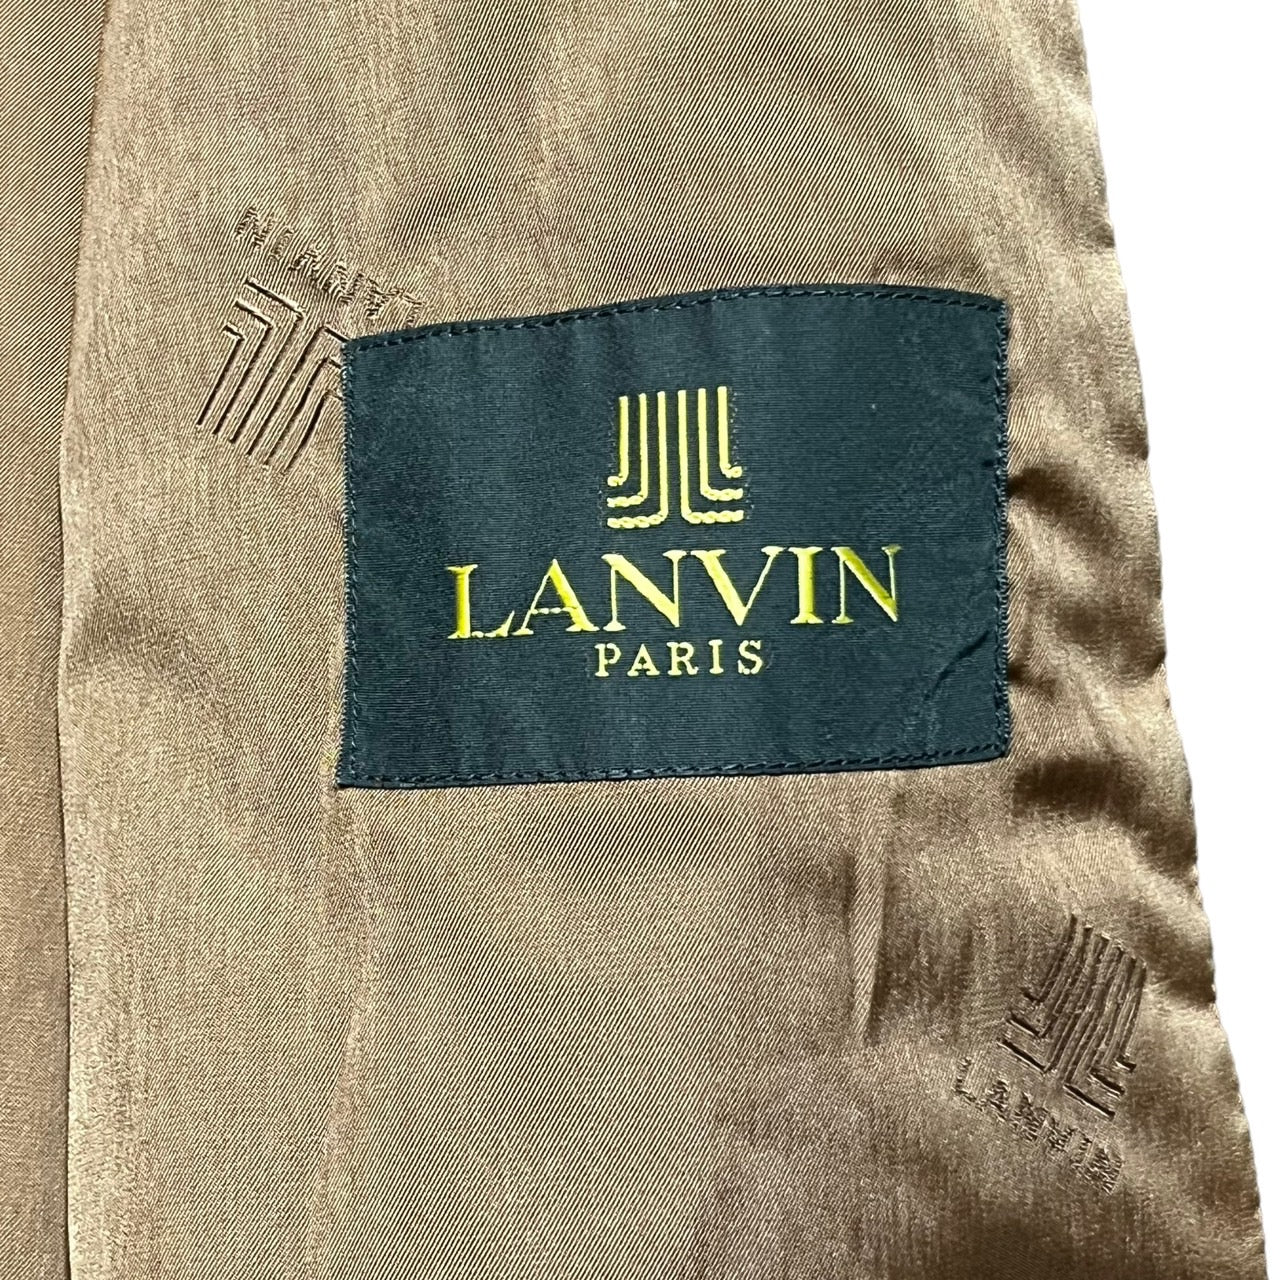 LANVIN(ランバン) 90~00's Cashmere blend wool coat with stainless steel collar/カシミヤ混ウールステンカラーコート SIZE表記無し(L程度) ネイビー